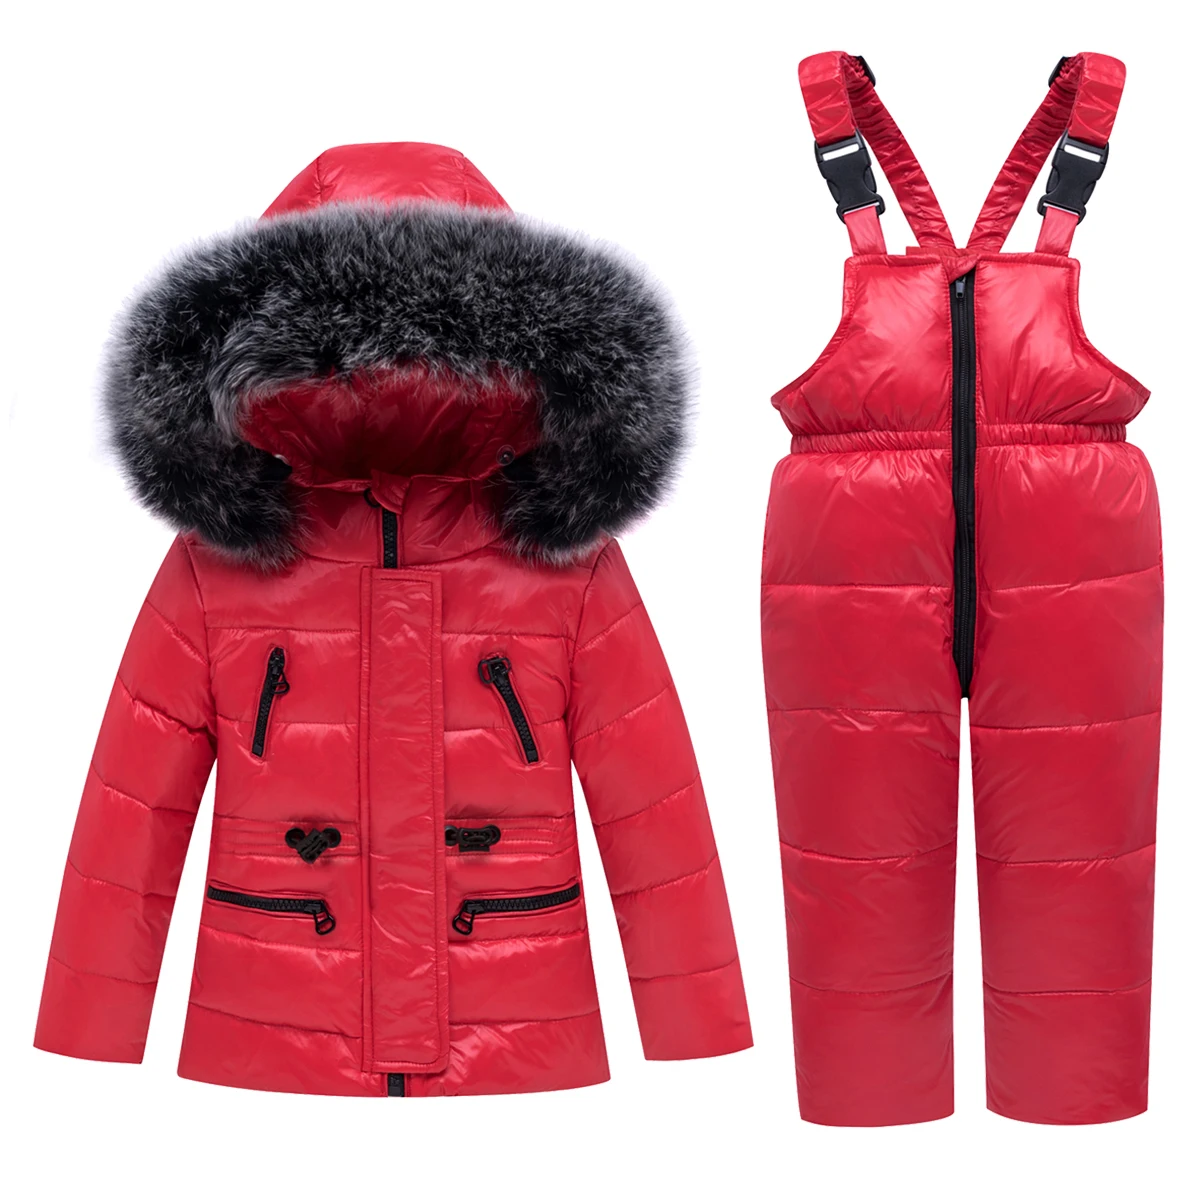 2, 3, 4, 5 лет, спортивный костюм для мальчиков, девочек Зимняя одежда комплект пуховая куртка с капюшоном-30 градусов Детский комбинезон комбинезоны, одежда для снежной погоды Одежда для малышей